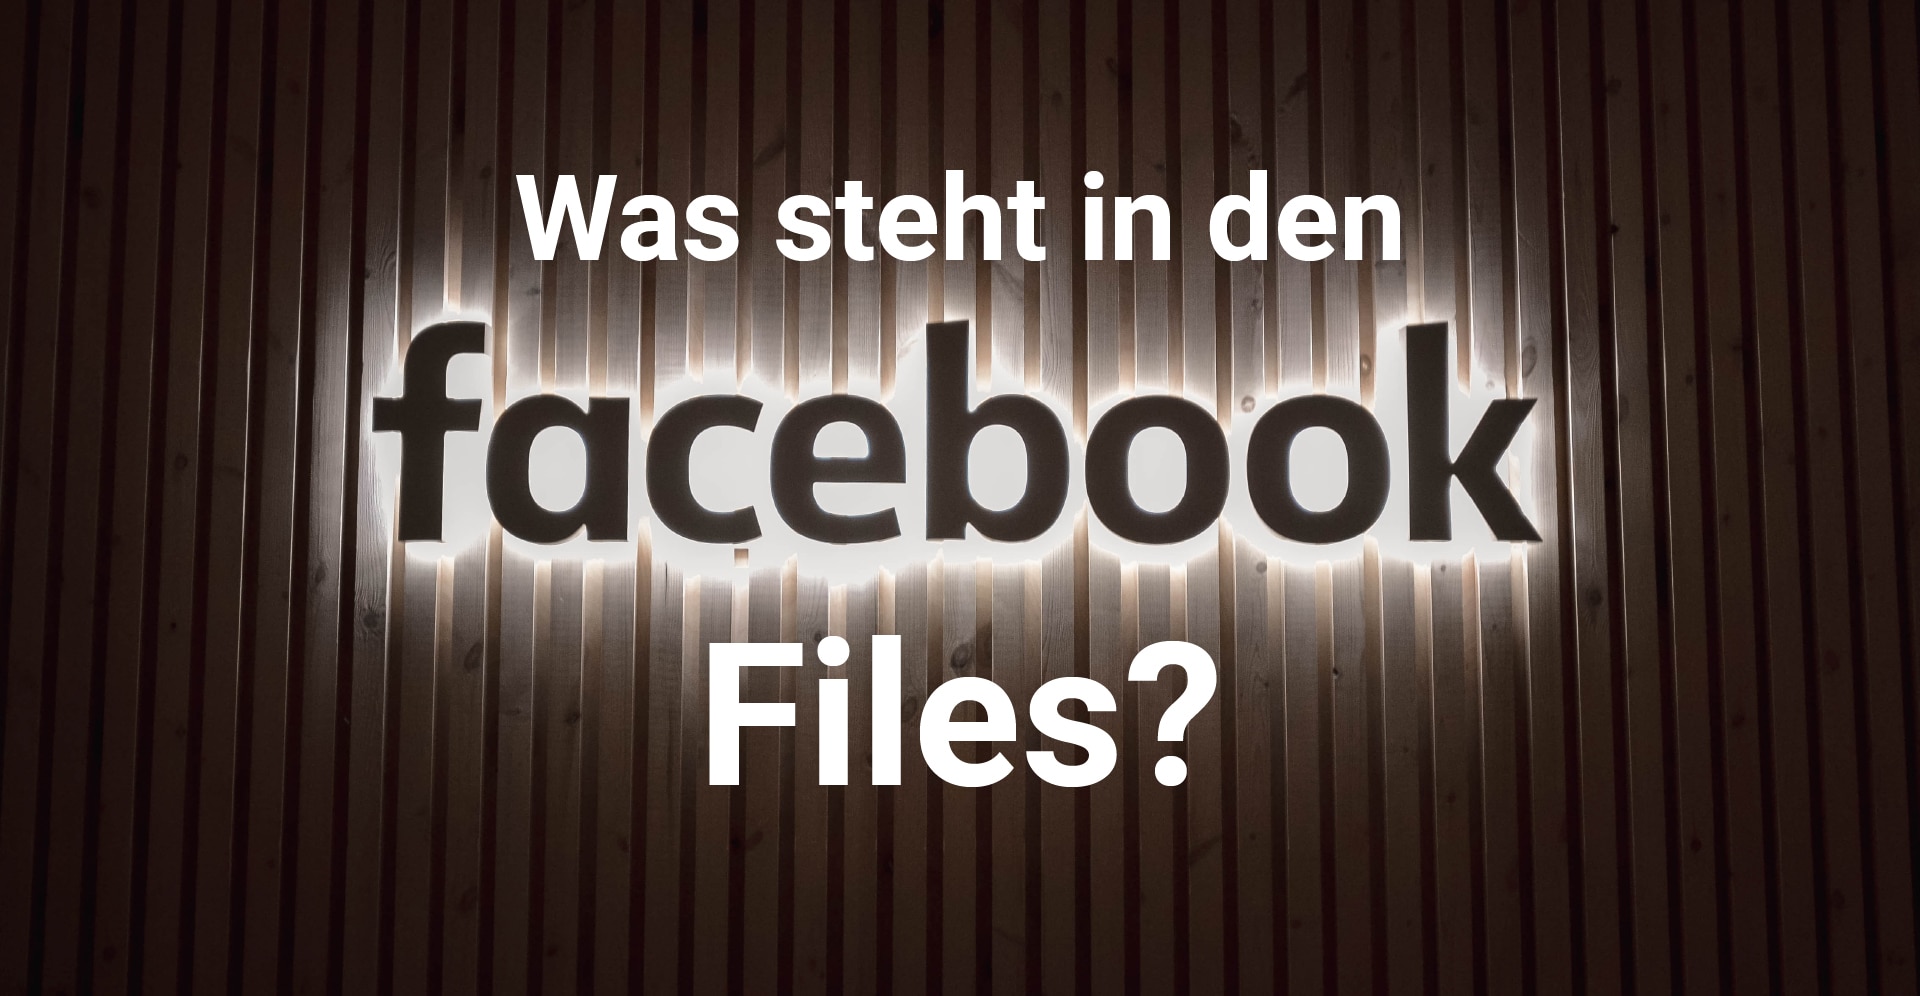 Ein Vorhang, davor der Text: Was steht in den Facebook Files?